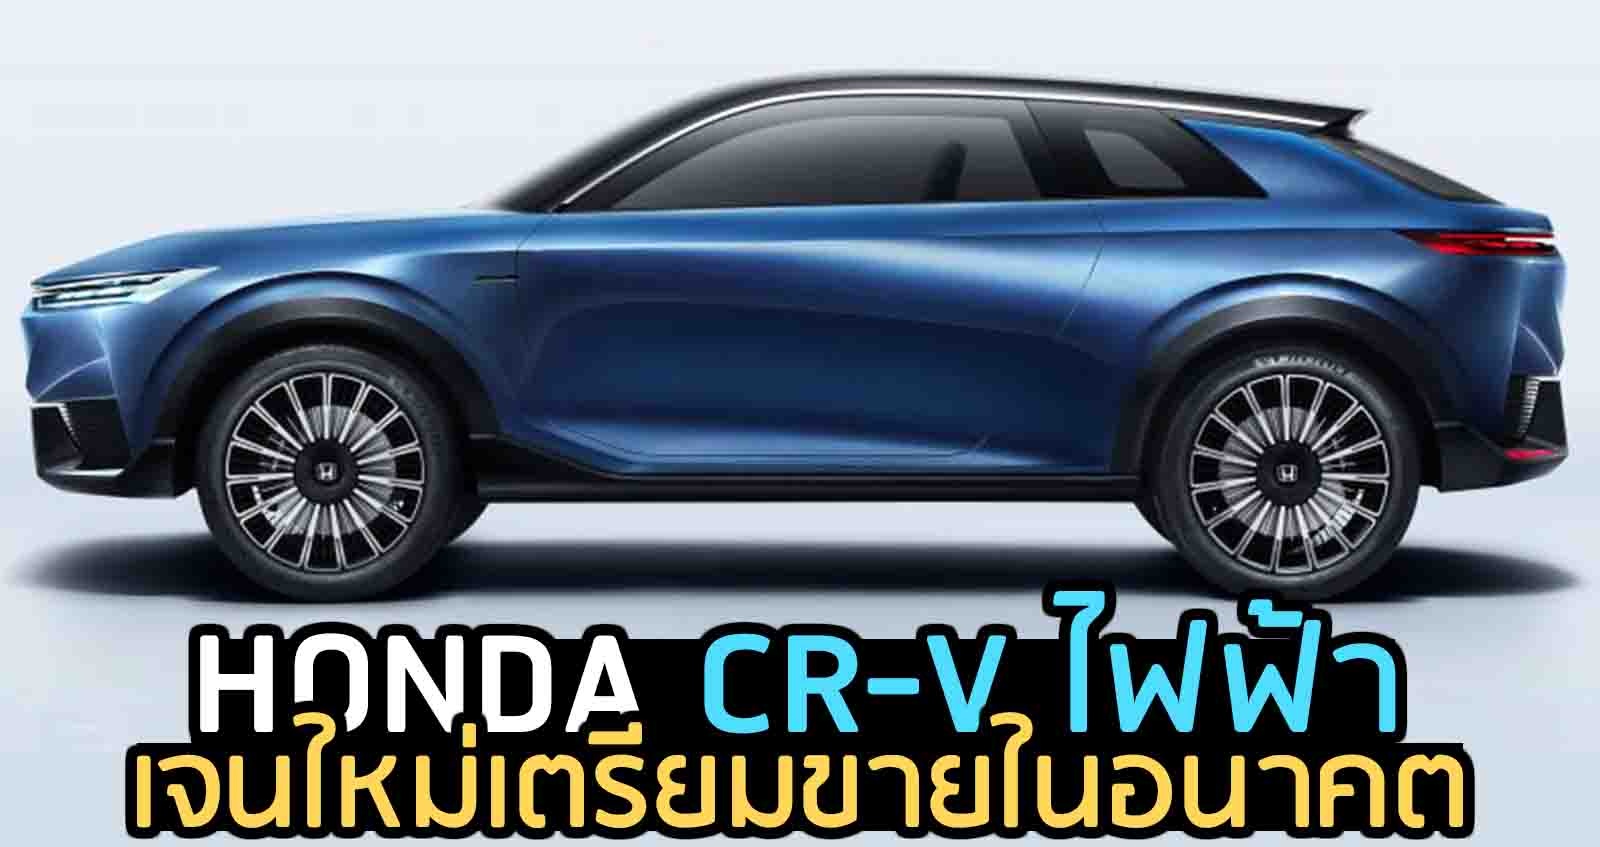 HONDA CR-V เจนใหม่ ไฟฟ้า เตรียมขายในอนาคต